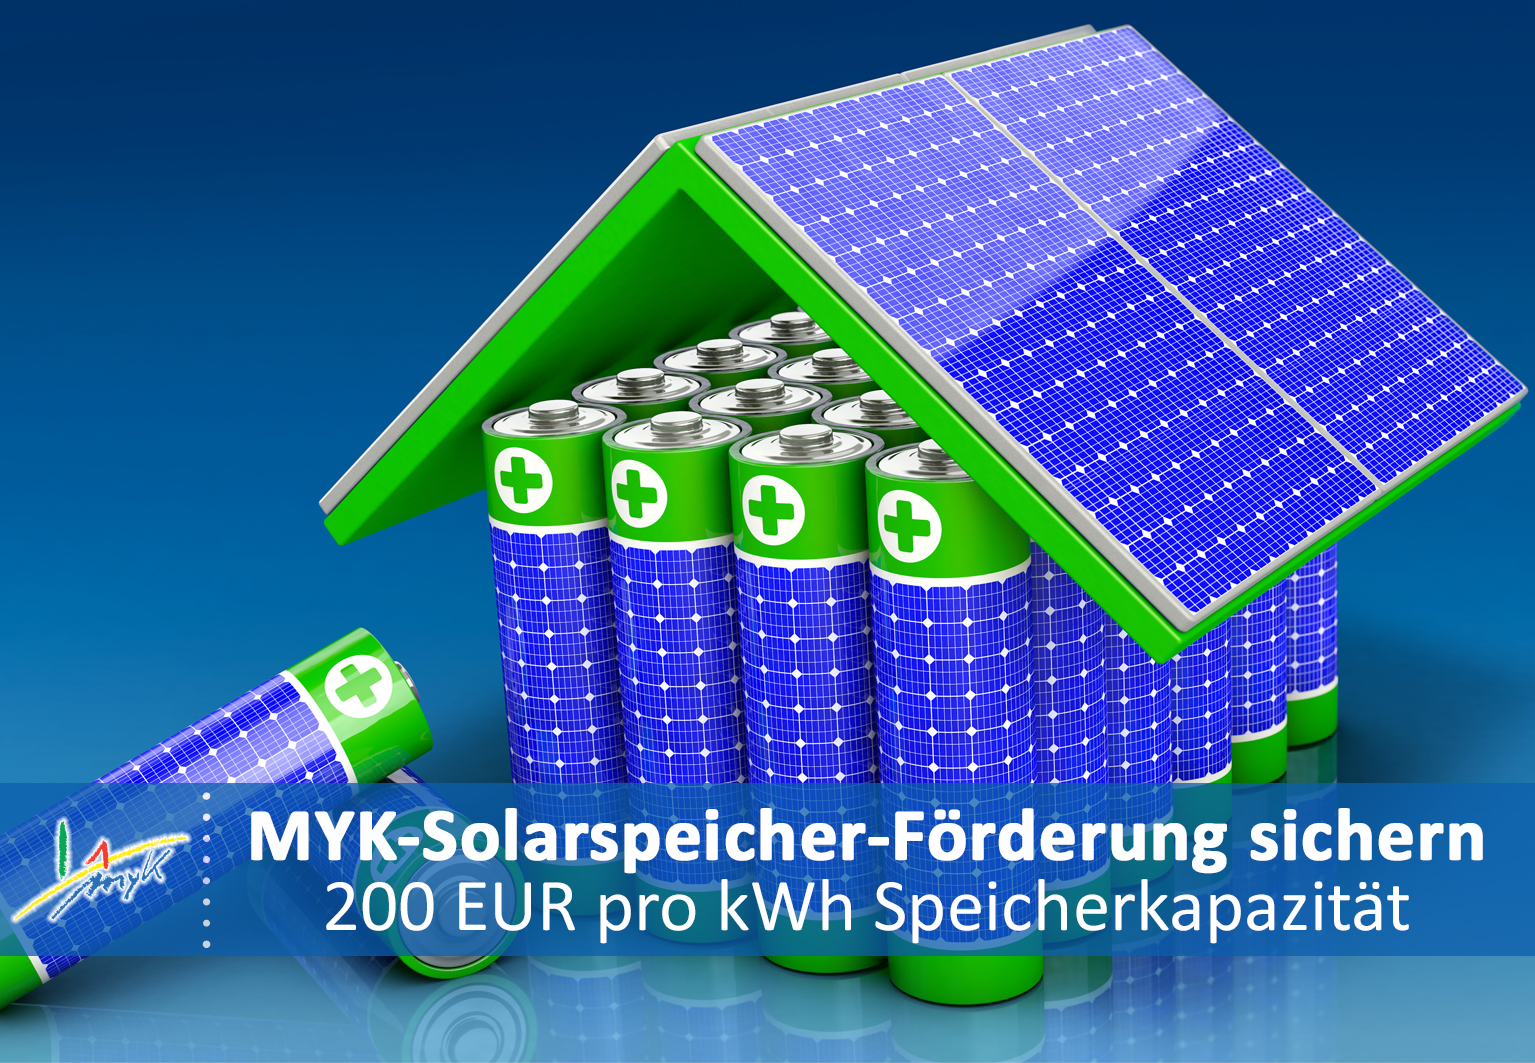 SolarspeicherFörderung des Landkreises MYK kann noch bis September